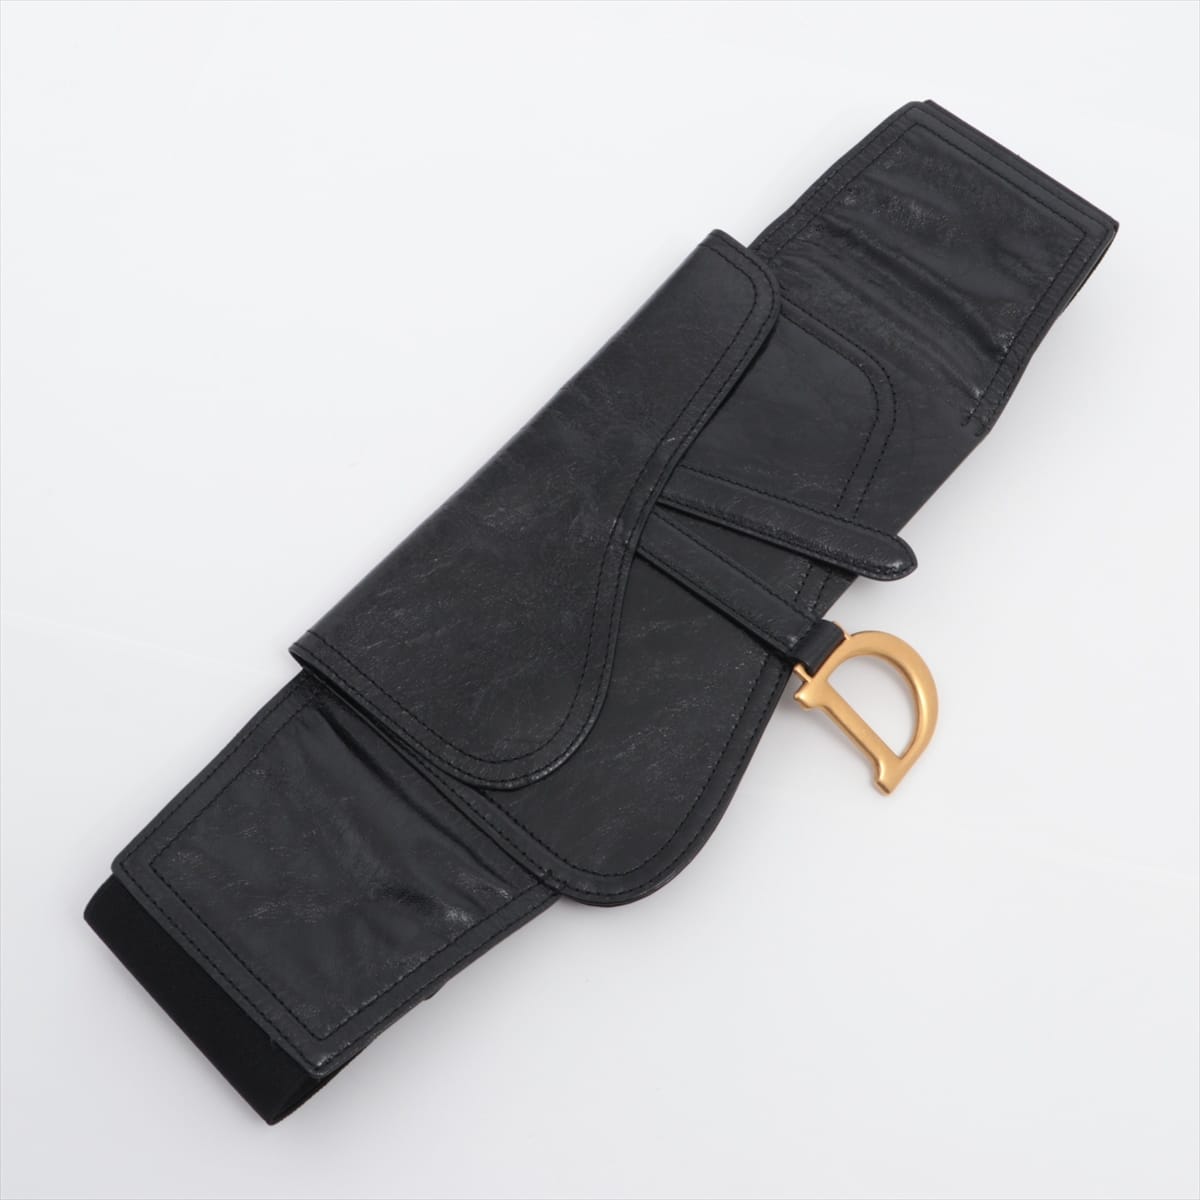 Christian Dior Saddle Belt Leather Black